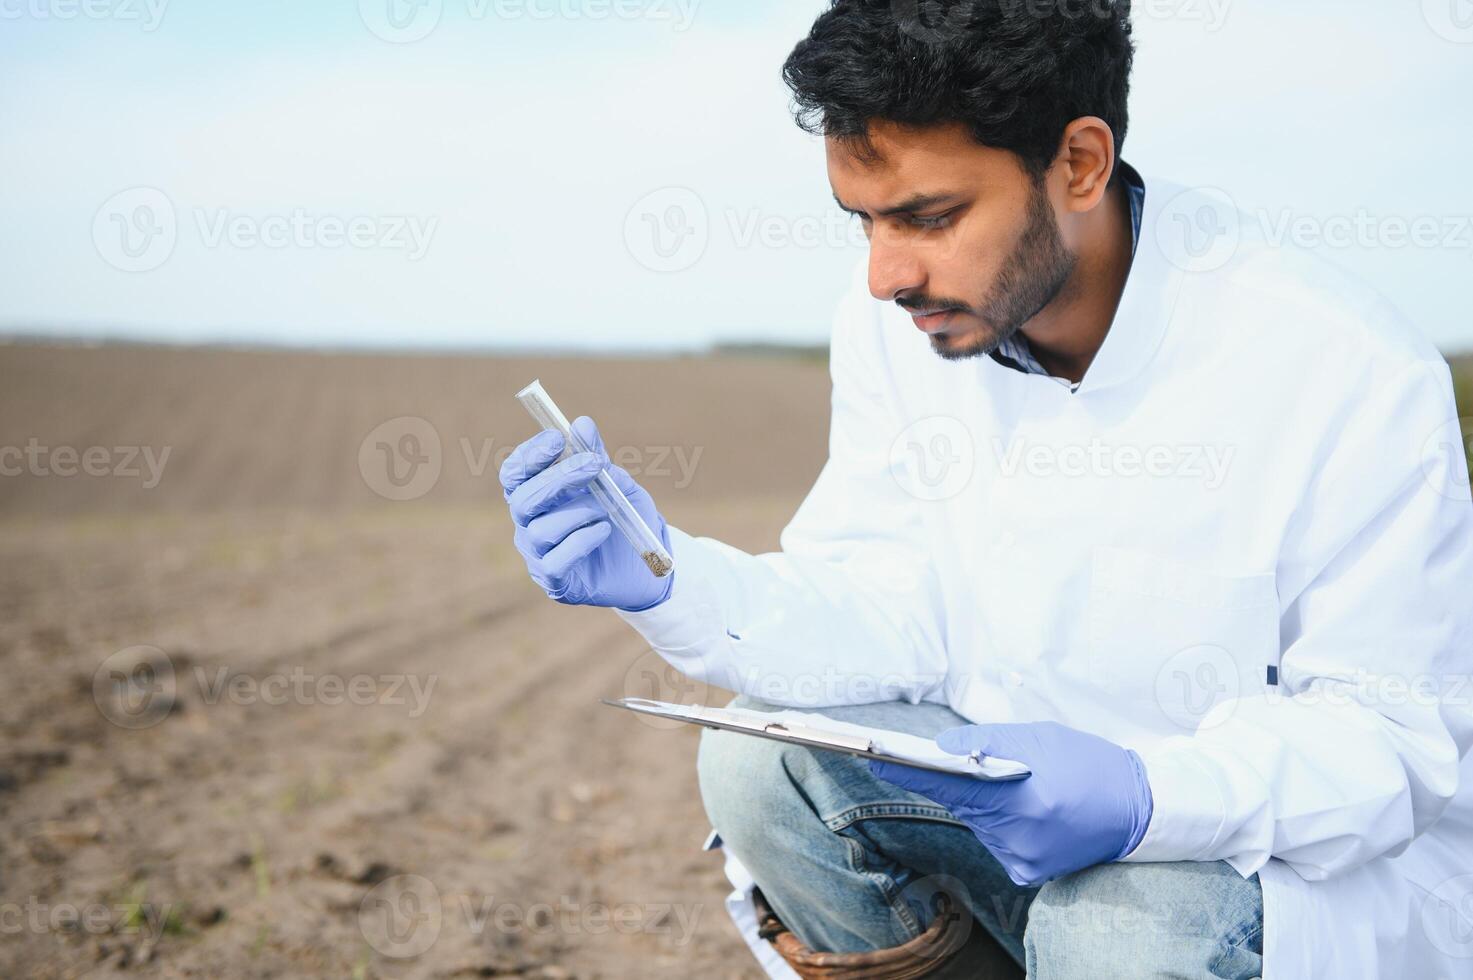 suelo prueba. indio agrónomo poniendo suelo con jardín pala en suelo muestra bolso exterior. ambiental investigación foto